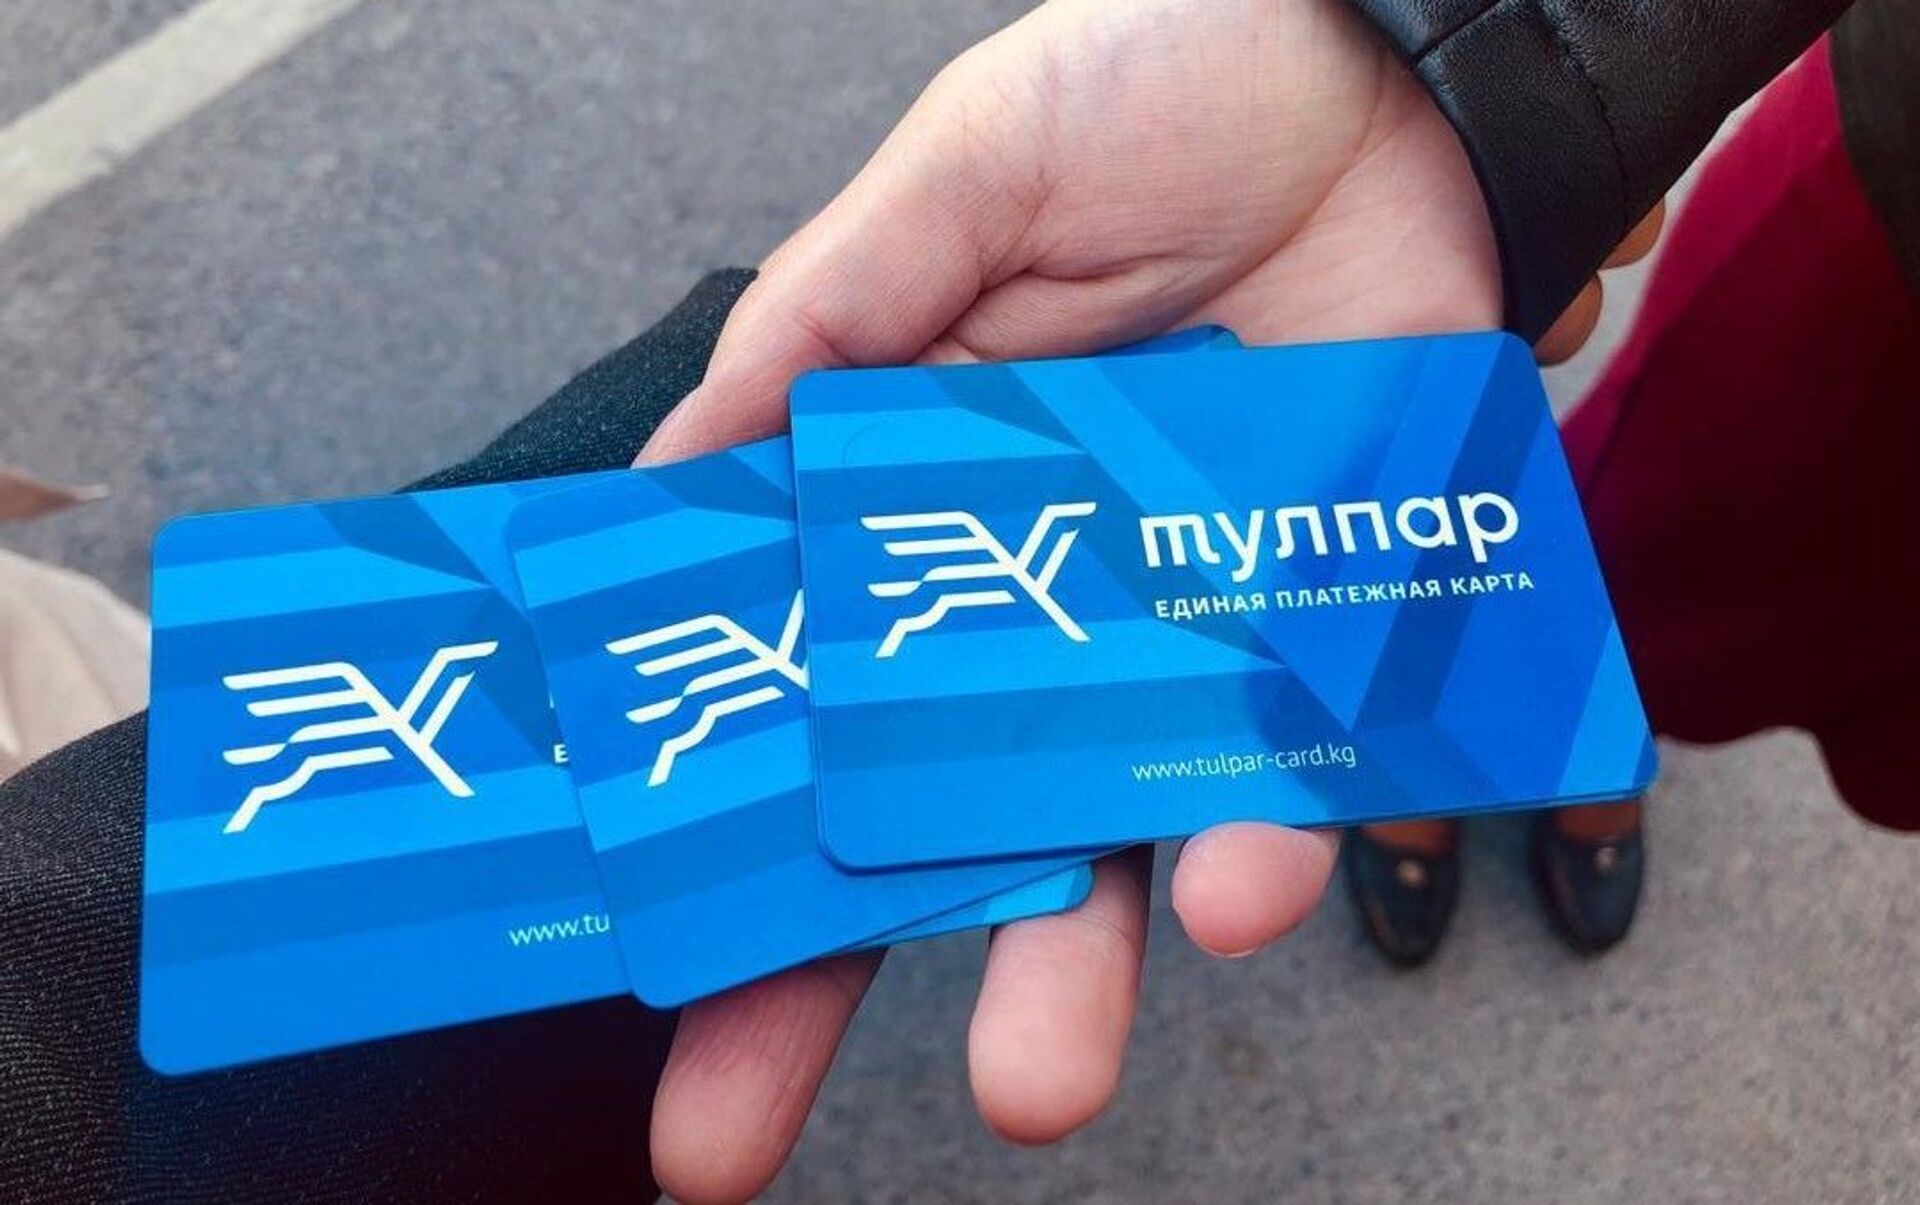 Карта "Тулпар" будет основным способом оплаты проезда в Бишкеке - как ее получить?